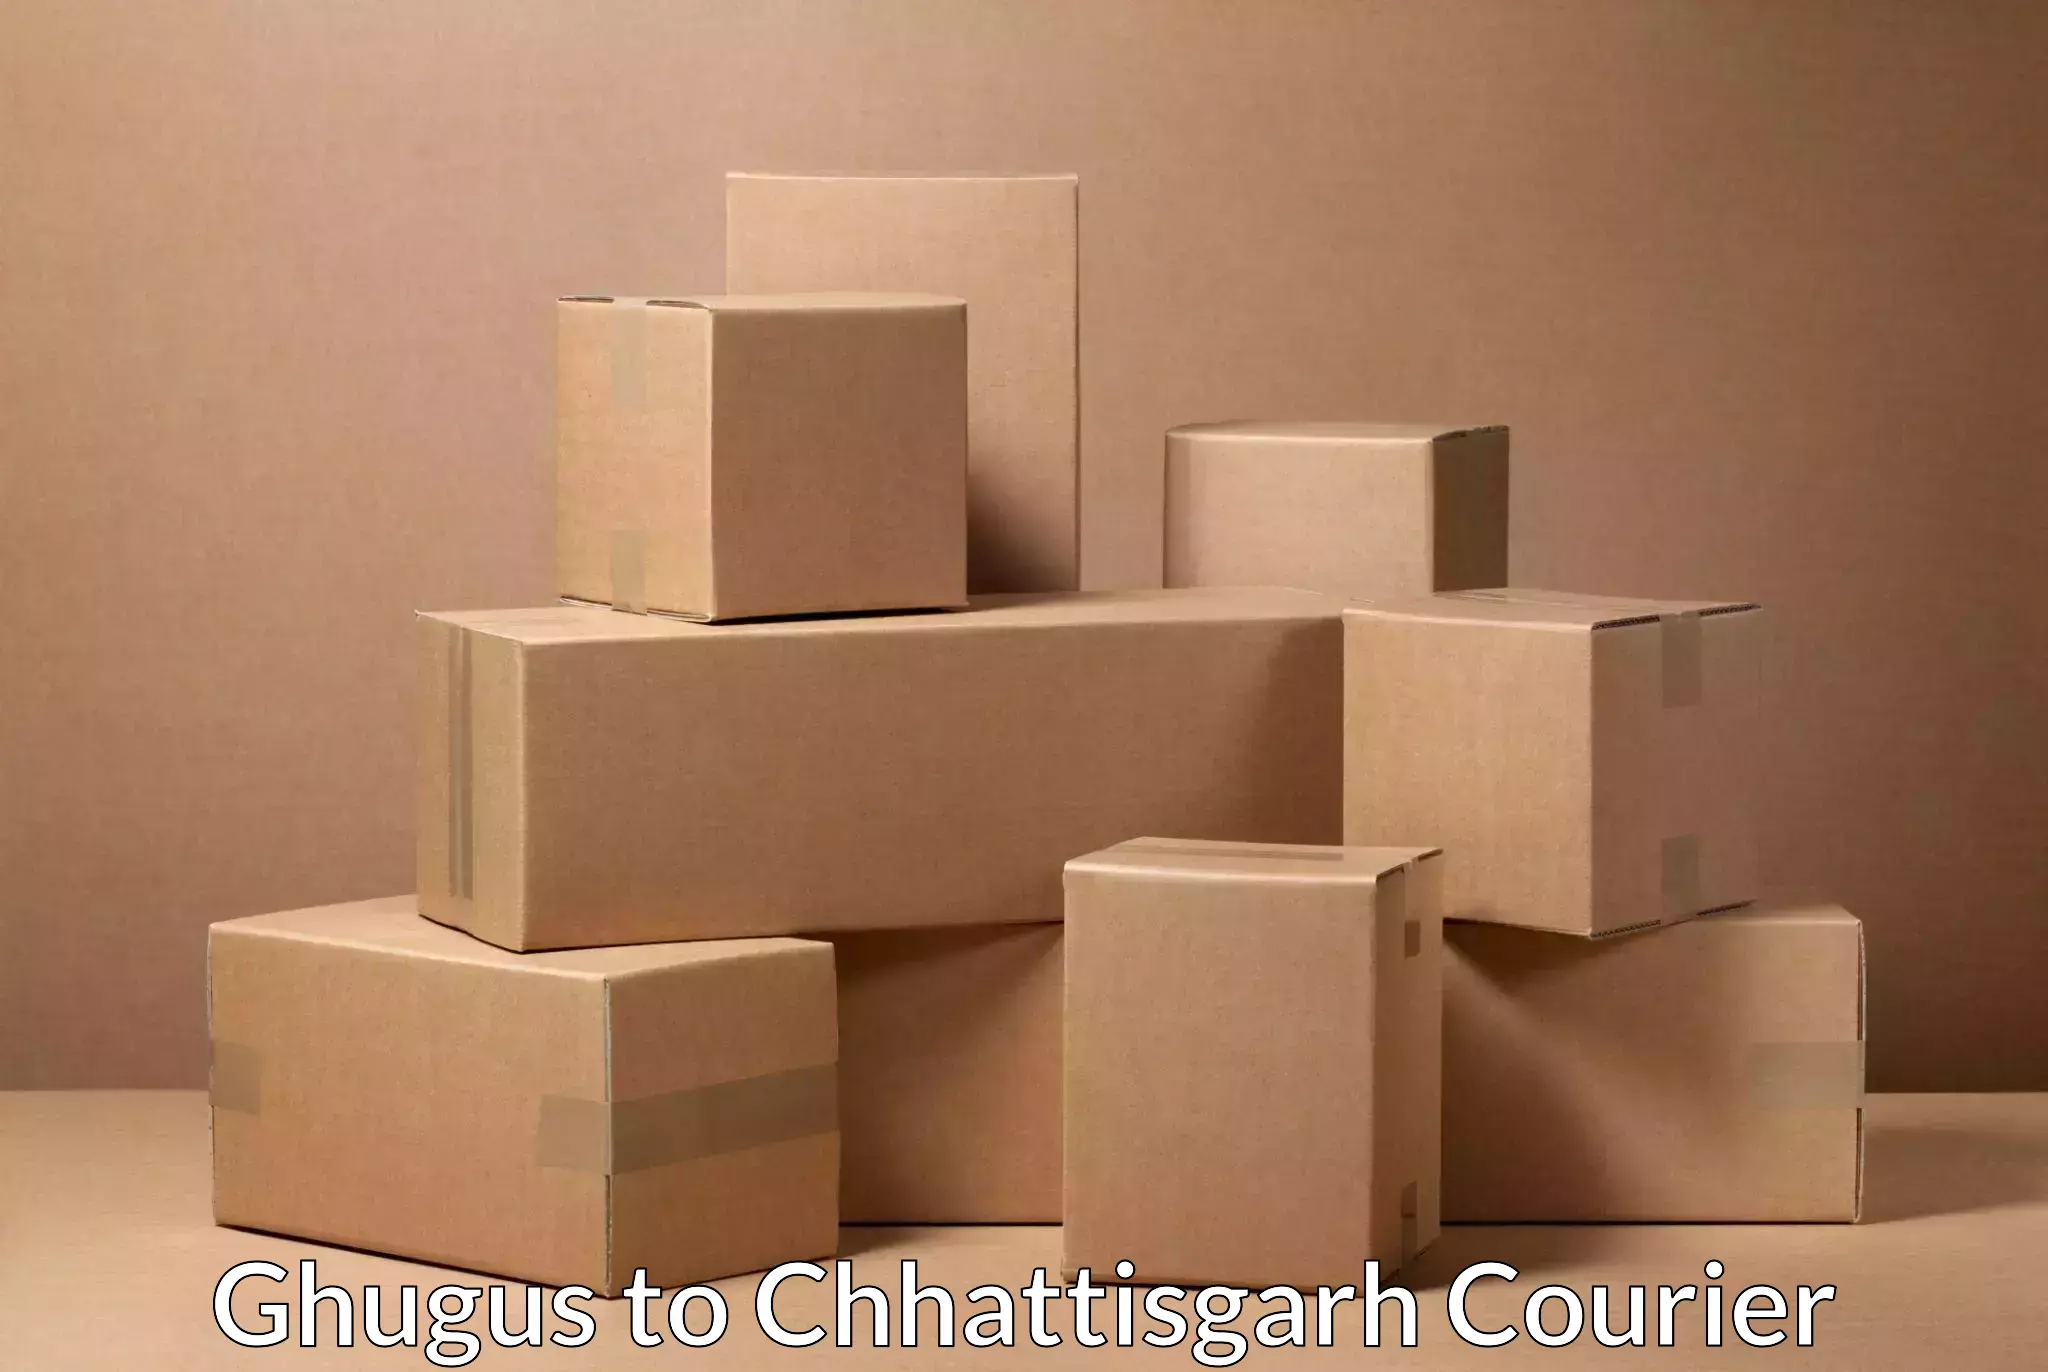 Urban courier service Ghugus to Chhattisgarh